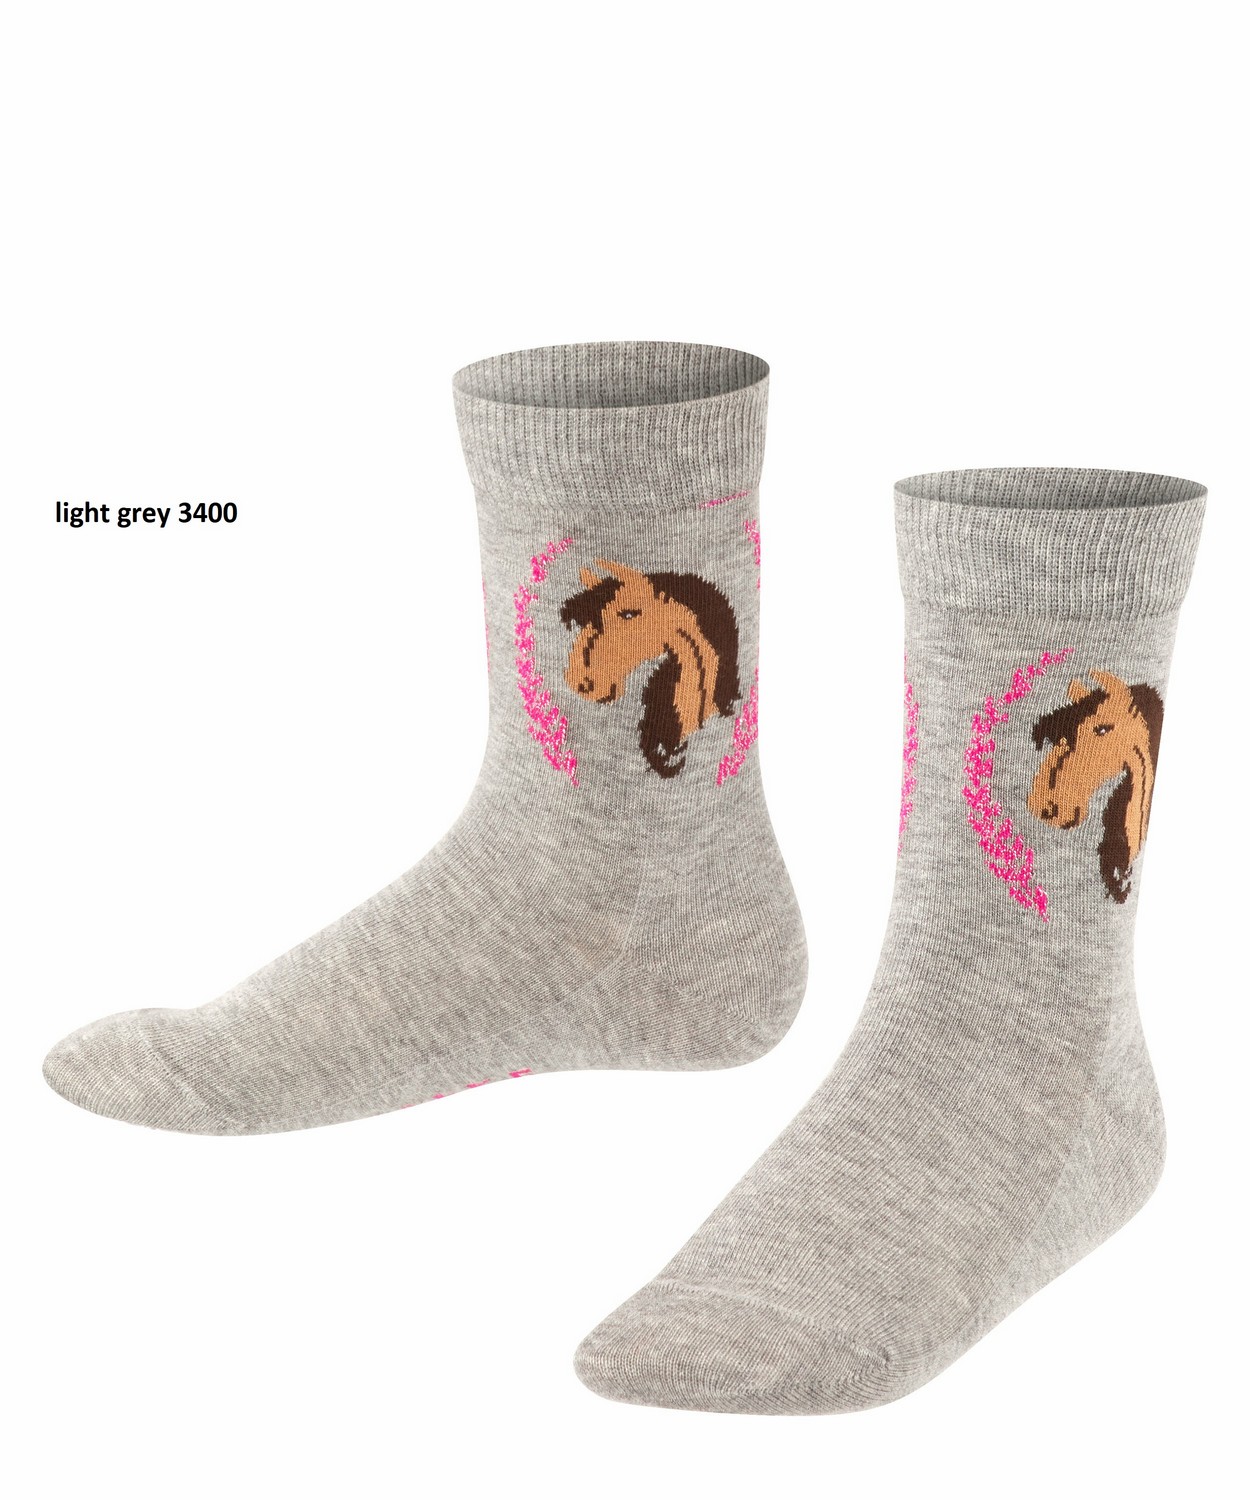 Dievčenské ponožky 